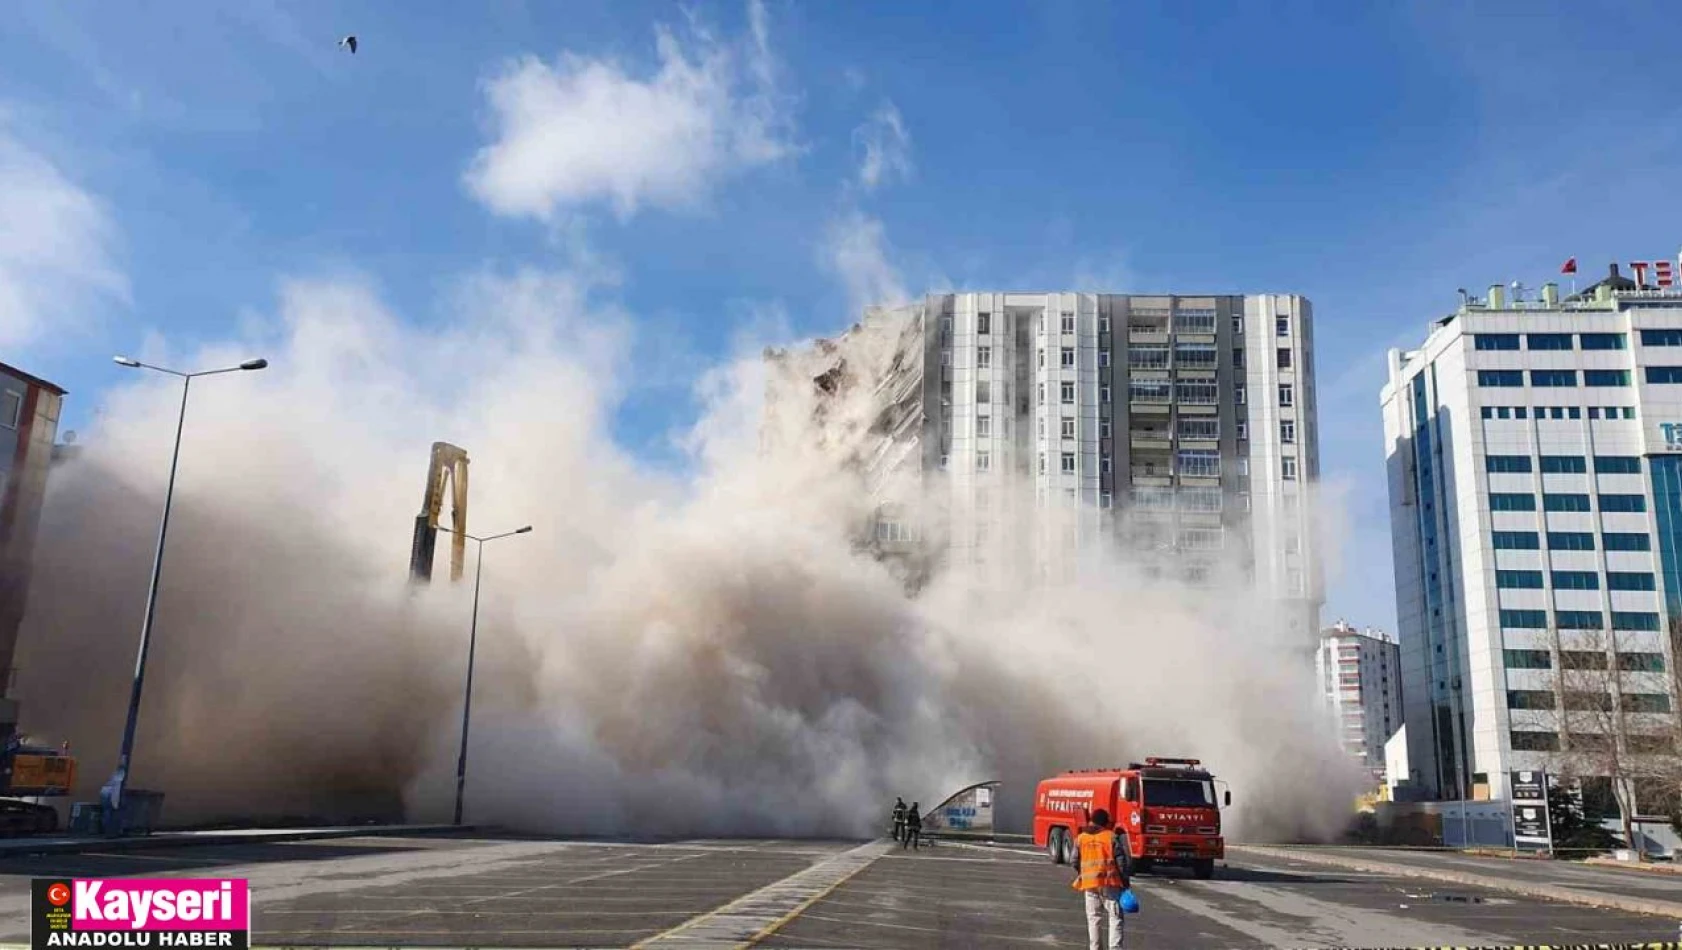 Valilikten açıklama geldi: Kayseri'de kaç tane ağır hasarlı yapı var?